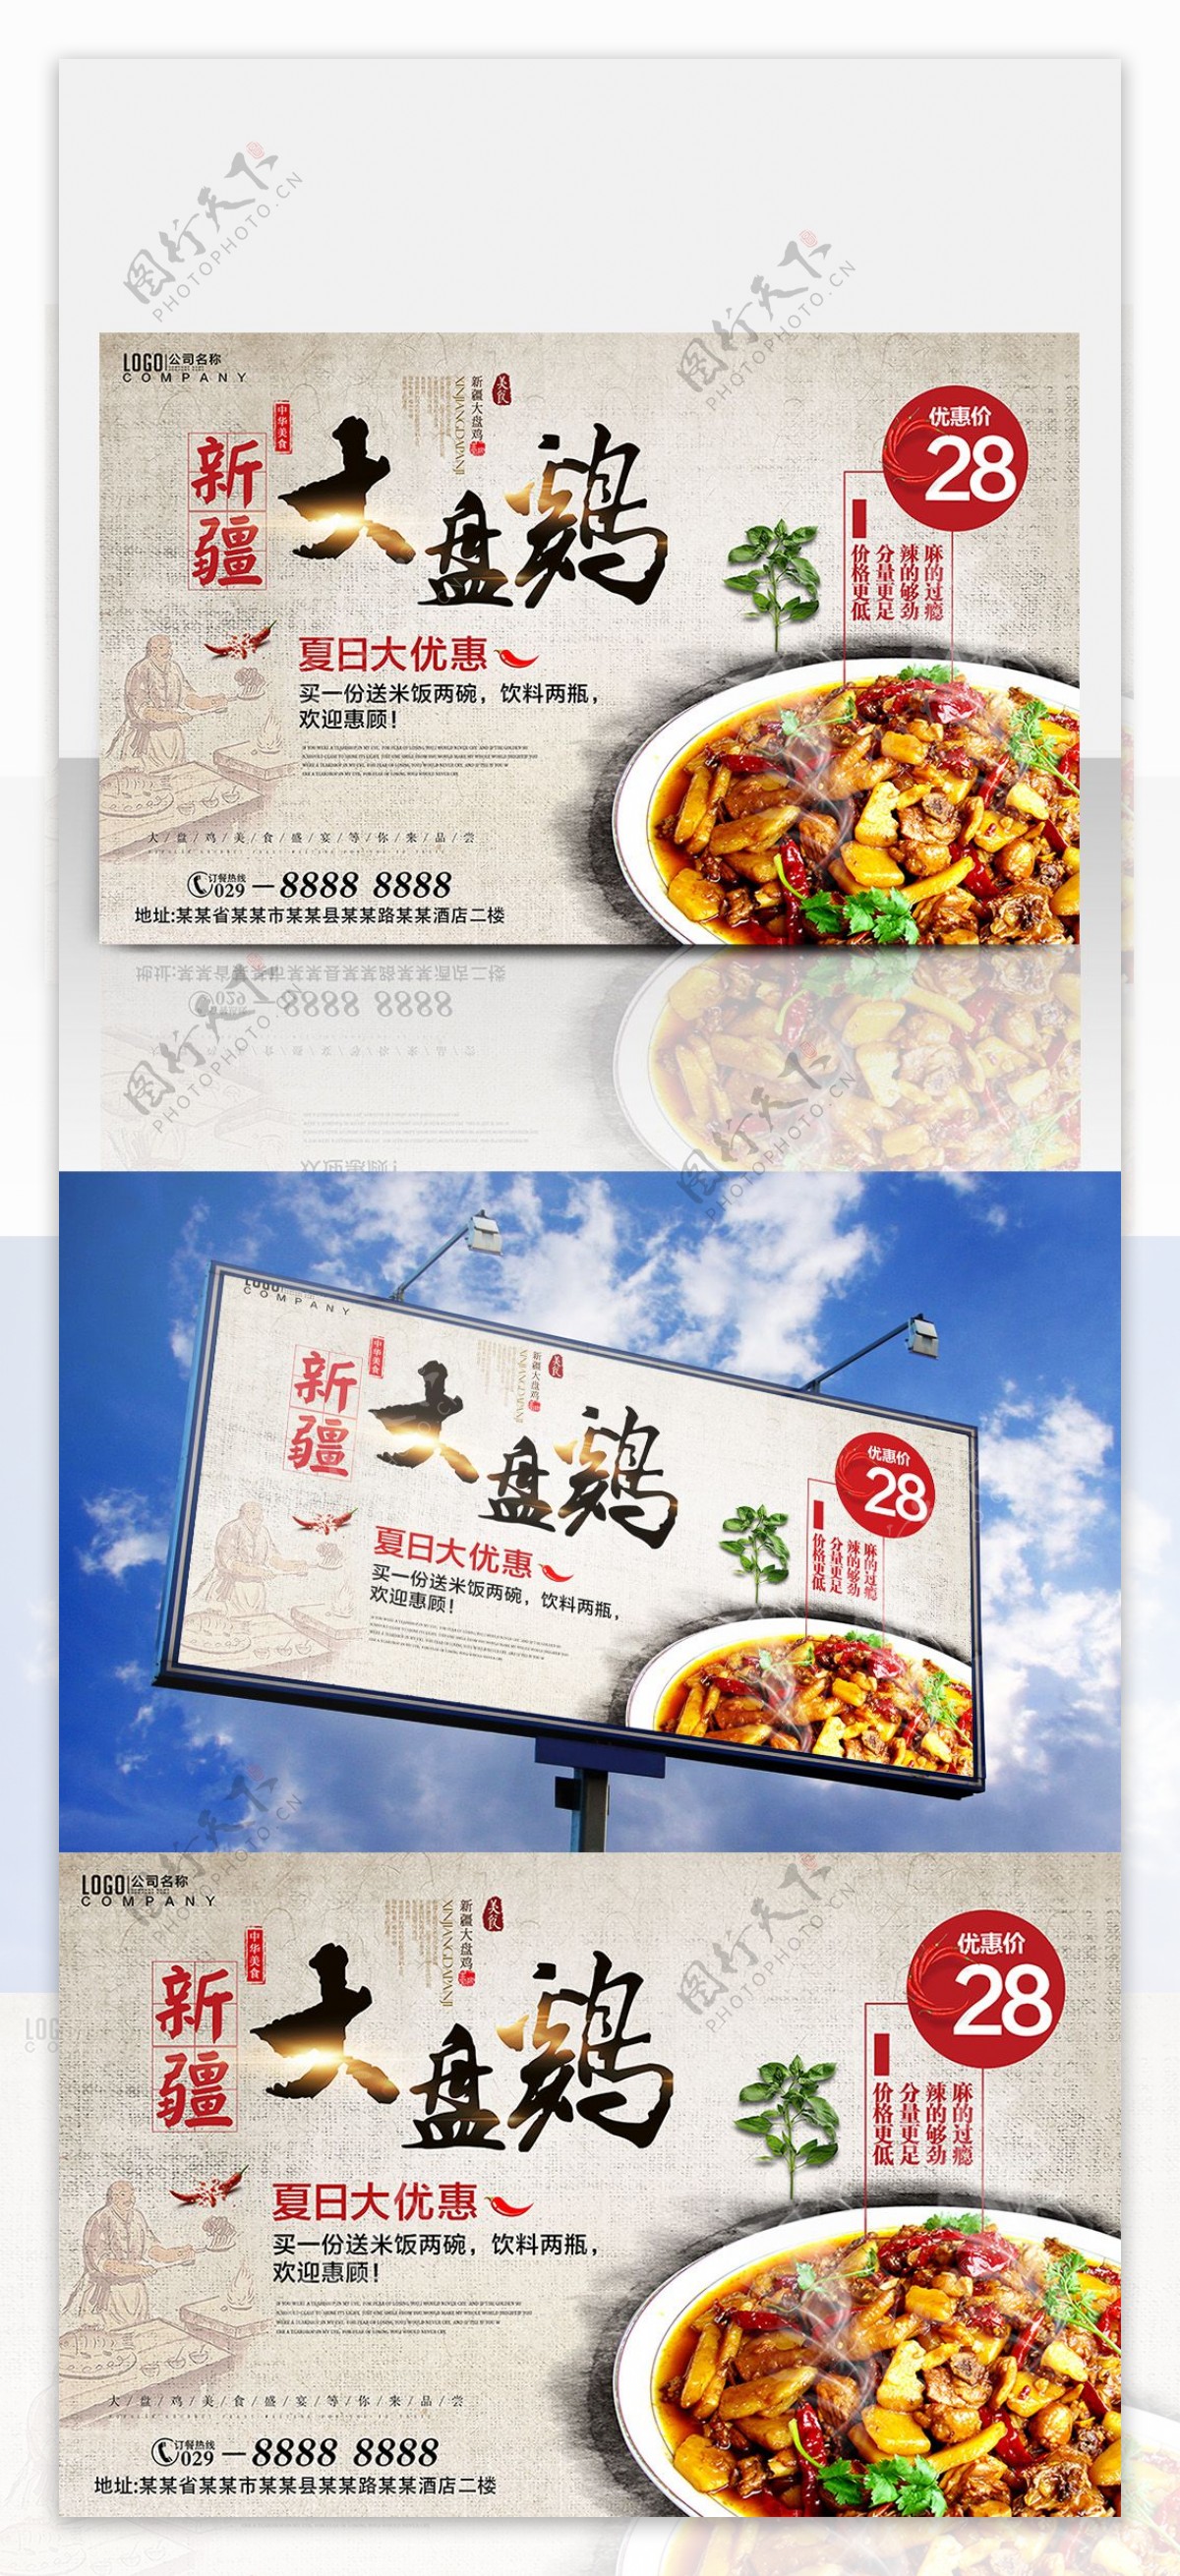 大盘鸡美食促销海报设计餐厅餐馆快餐店